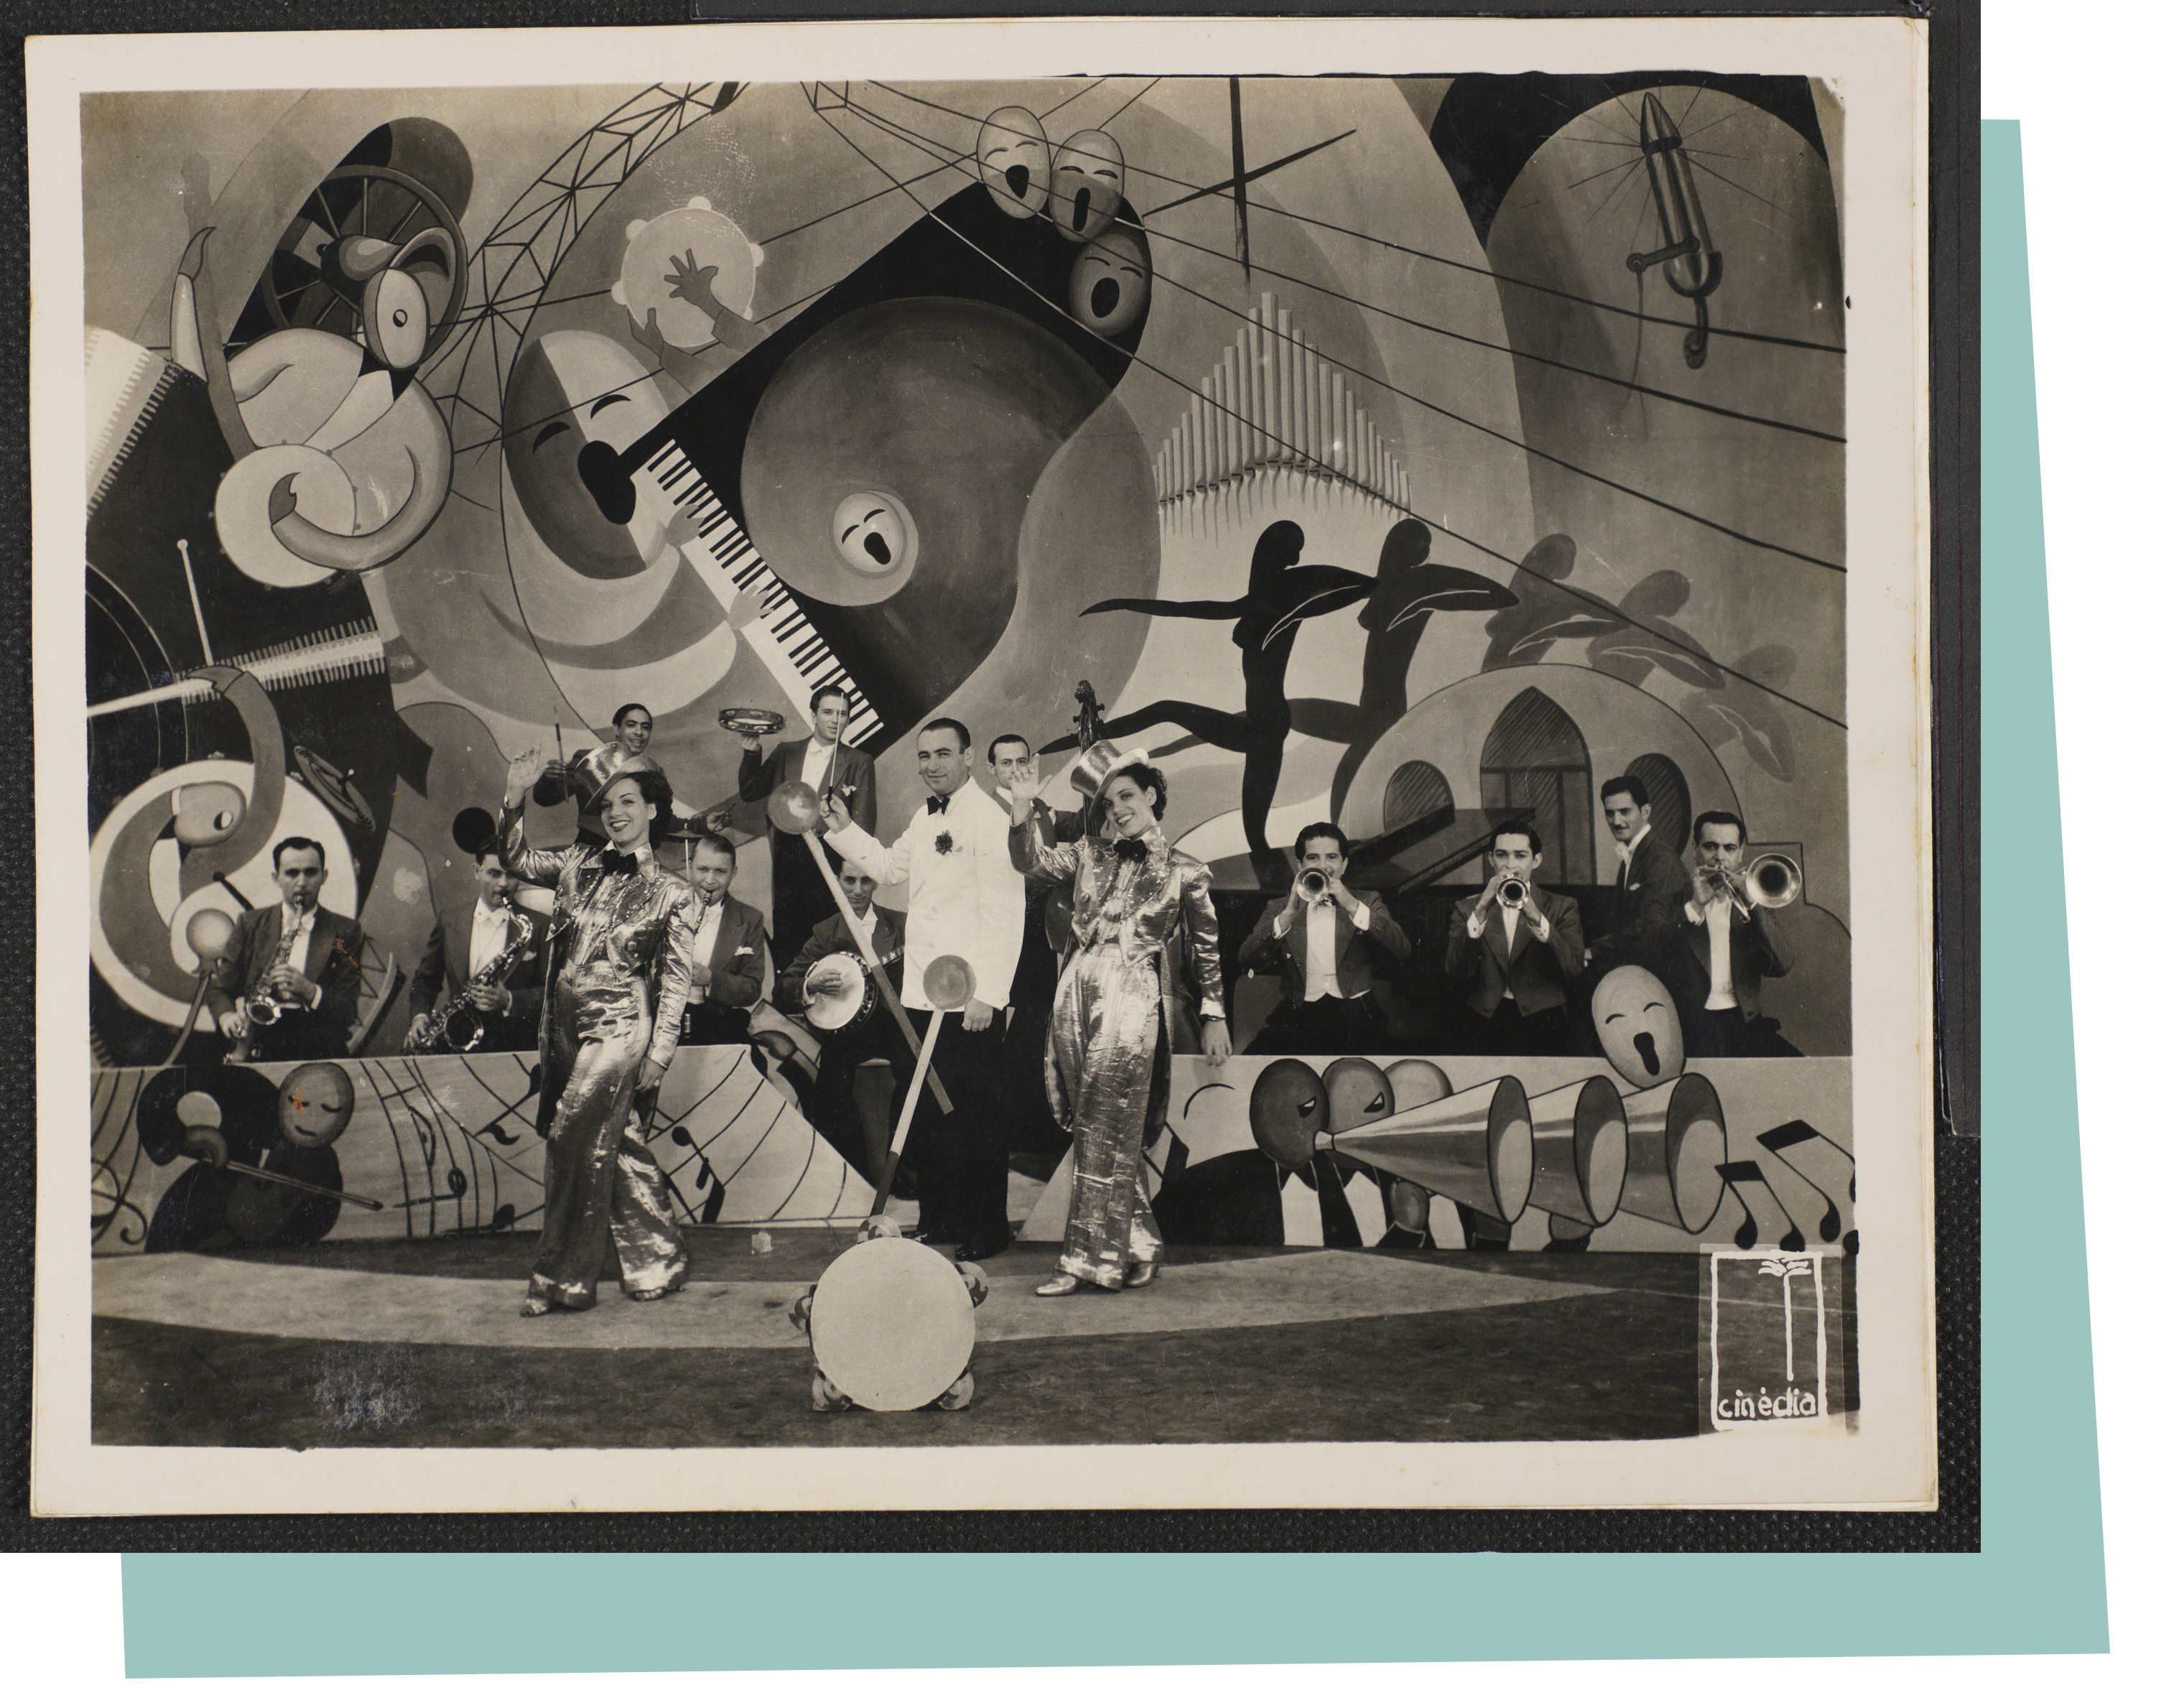  Carmen Miranda, Aurora Miranda e o Bando da Lua em cena referente ao filme, 1936 - 
              Jurandyr Noronha - 
              Coleção Jurandyr Noronha - 
              Acervo FMIS/RJ